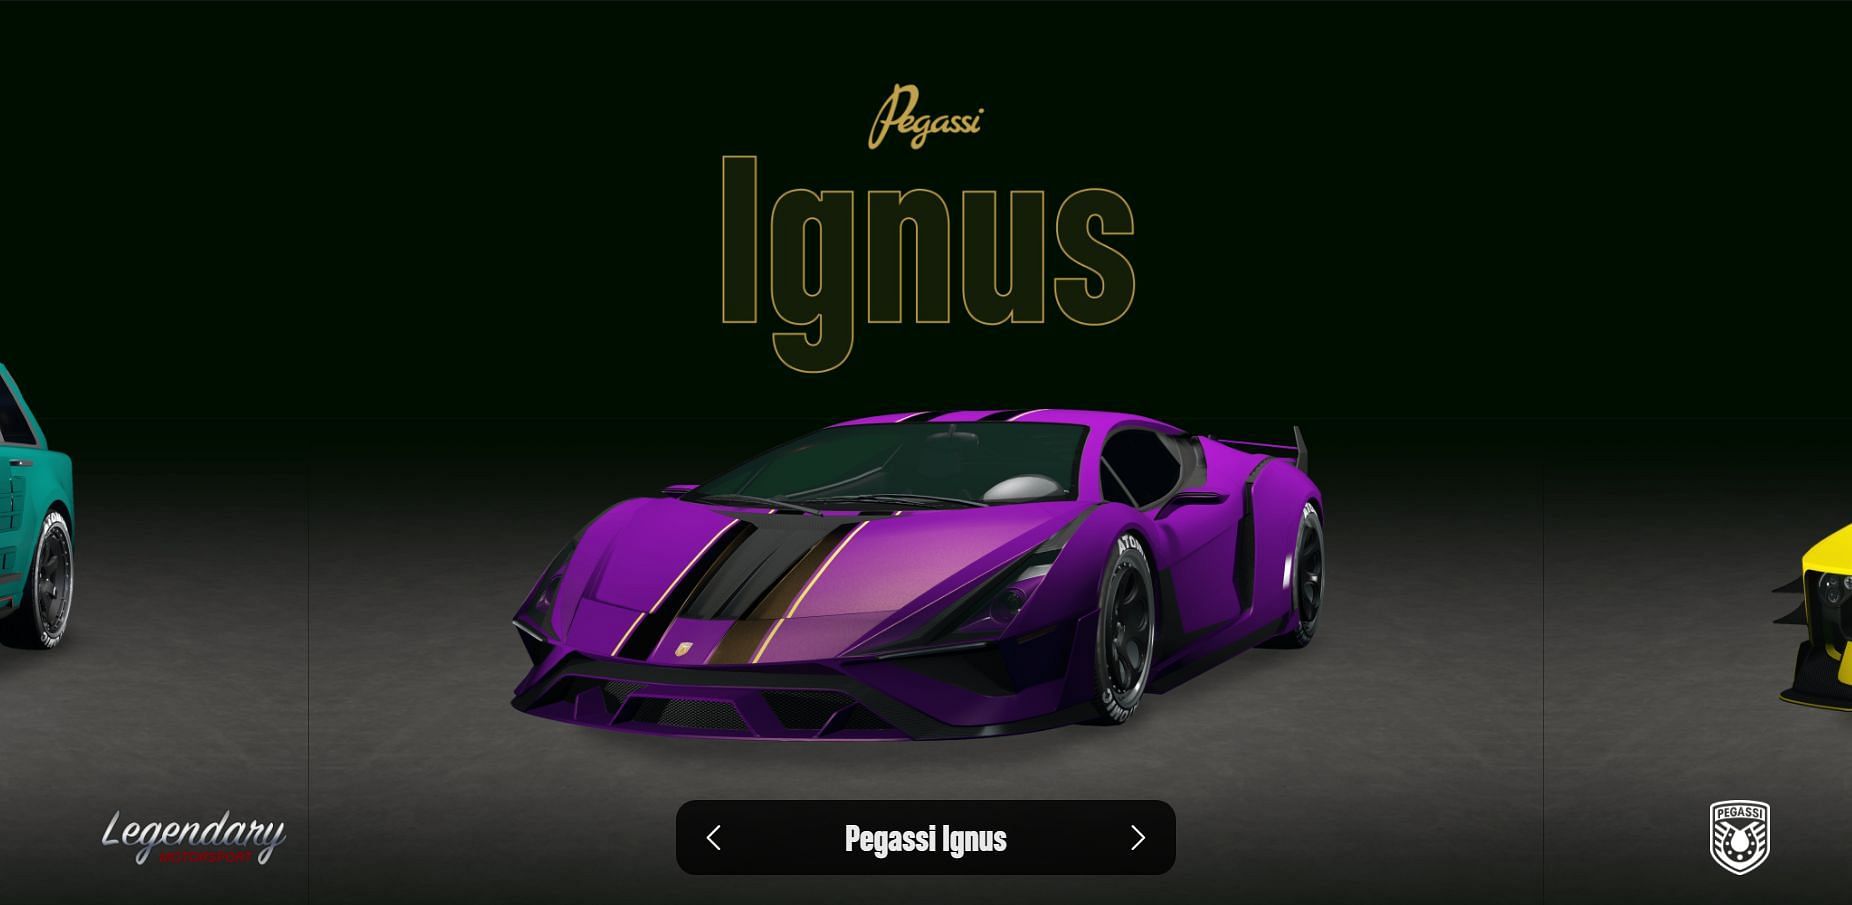 The Pegassi Ignus in GTA Online (Image via Rockstar Games)